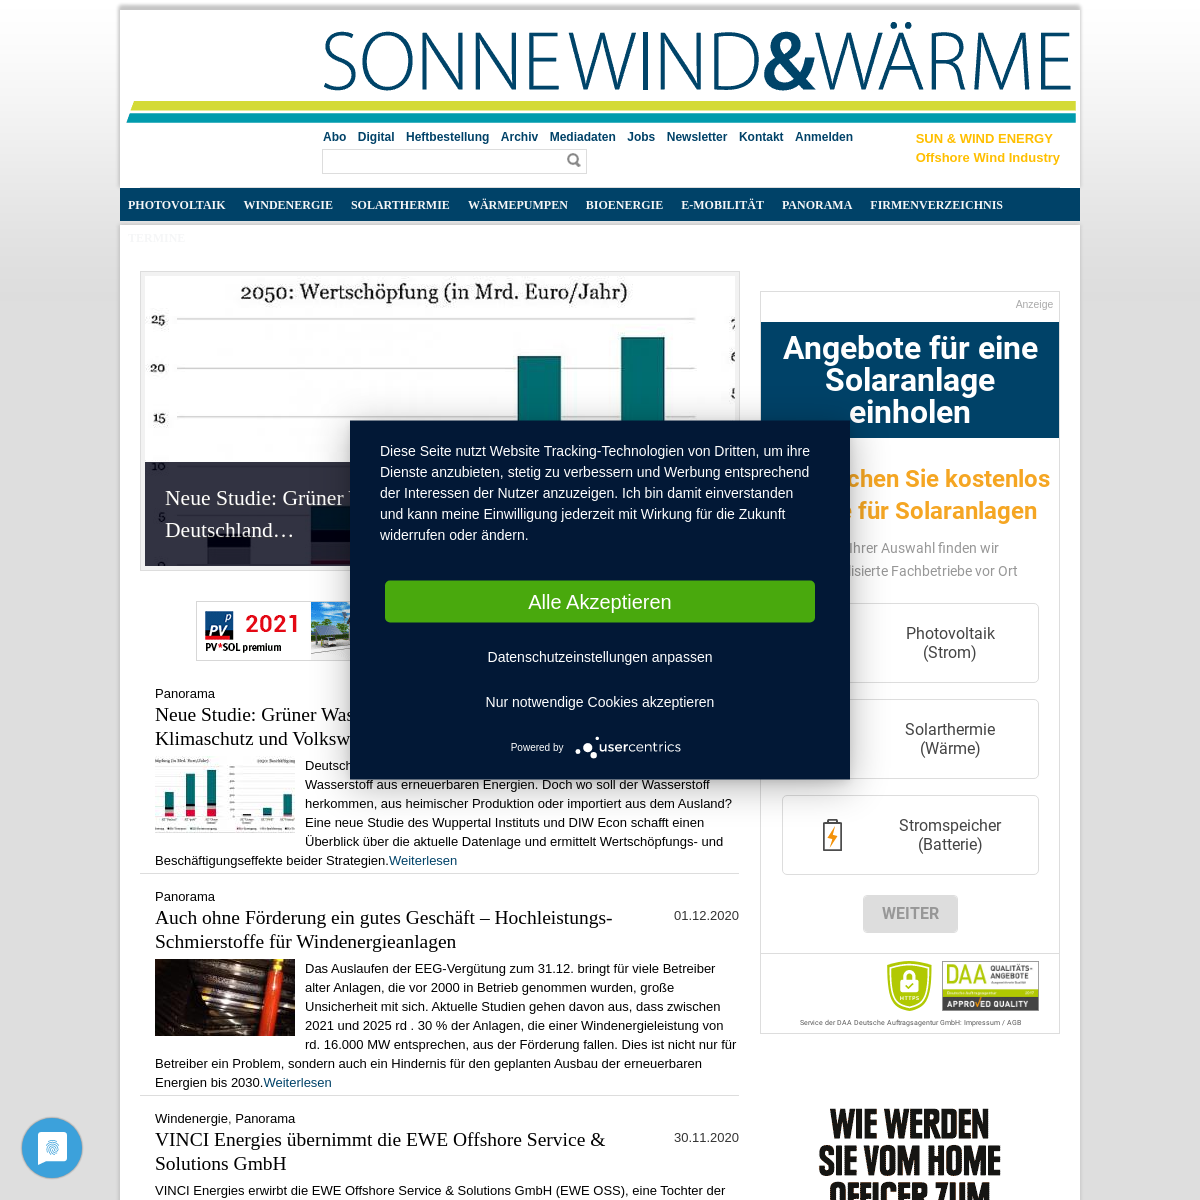 A complete backup of sonnewindwaerme.de